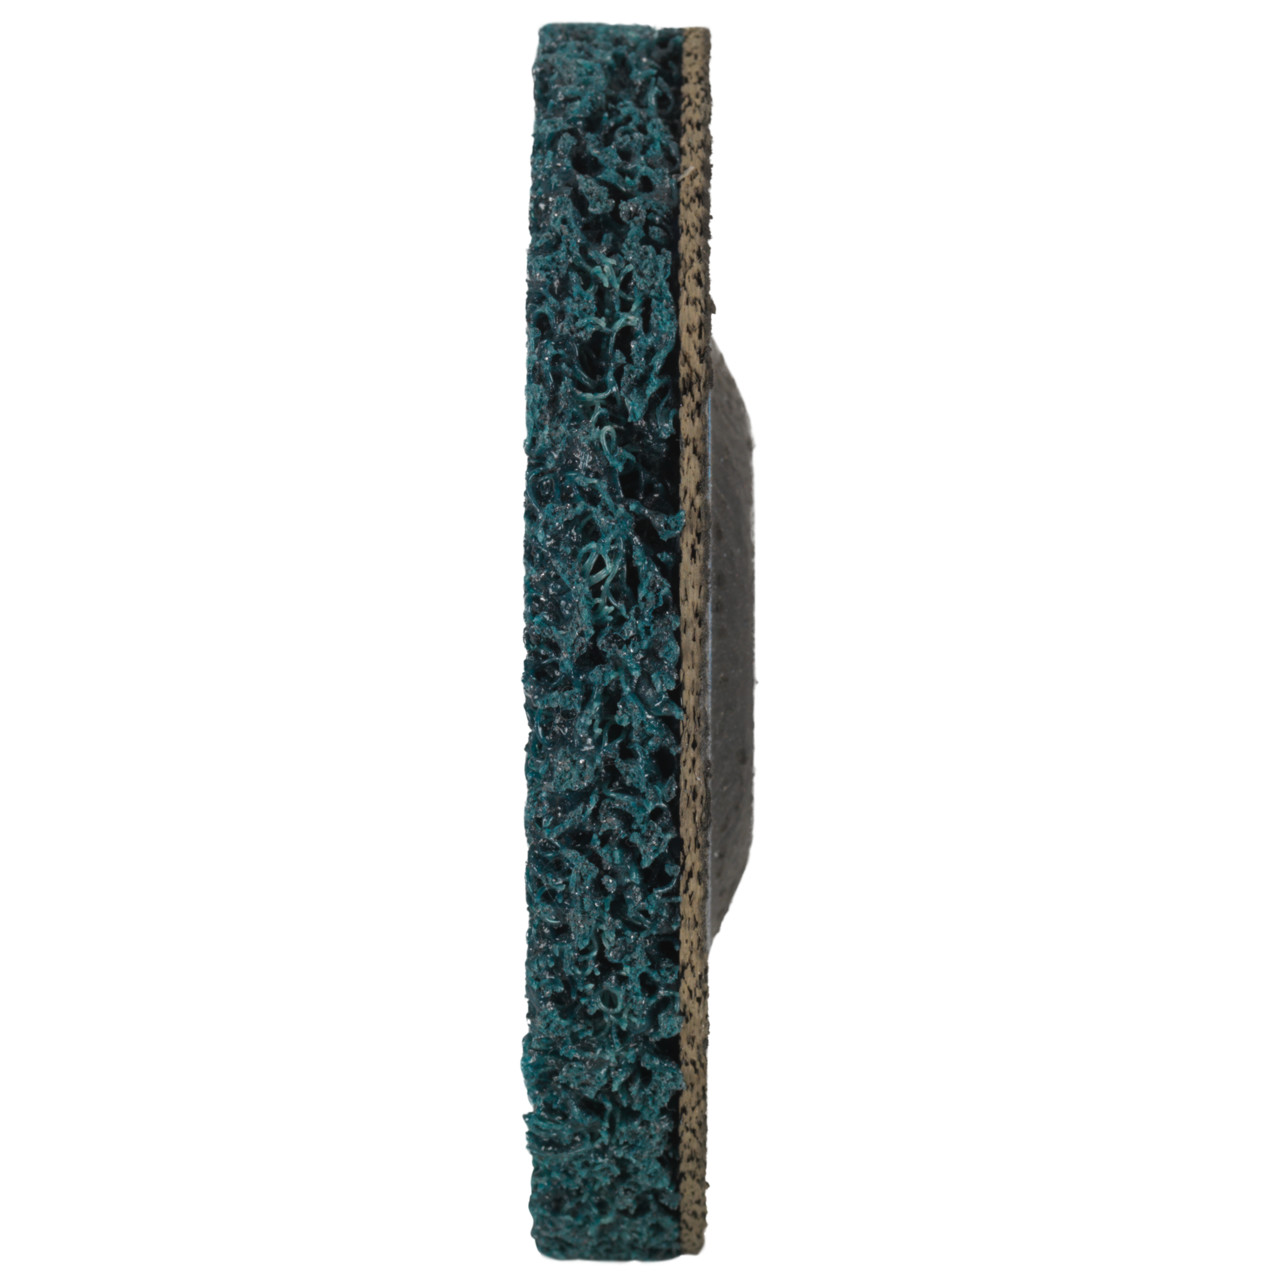 Tyrolit Disque de nettoyage grossier DxH 115x22,2 Utilisation universelle, C GROB, forme : 28- (disque de nettoyage grossier), art. 898014